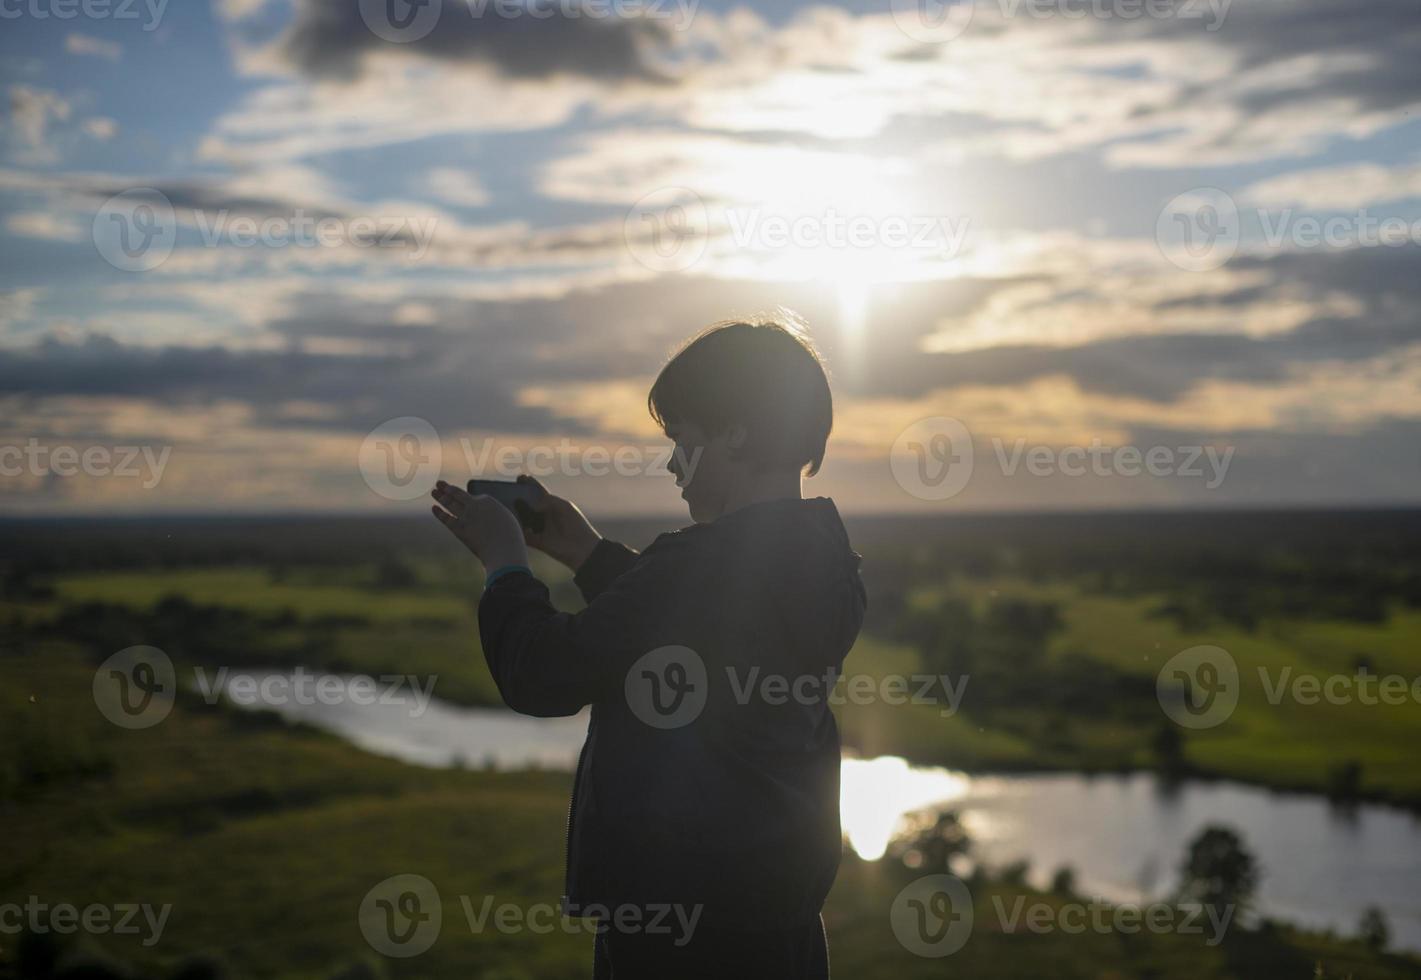 um menino tira fotos em seu telefone de uma incrível paisagem montanhosa com um lago durante o pôr do sol. o menino está observando a natureza. liberdade de estilo de vida.